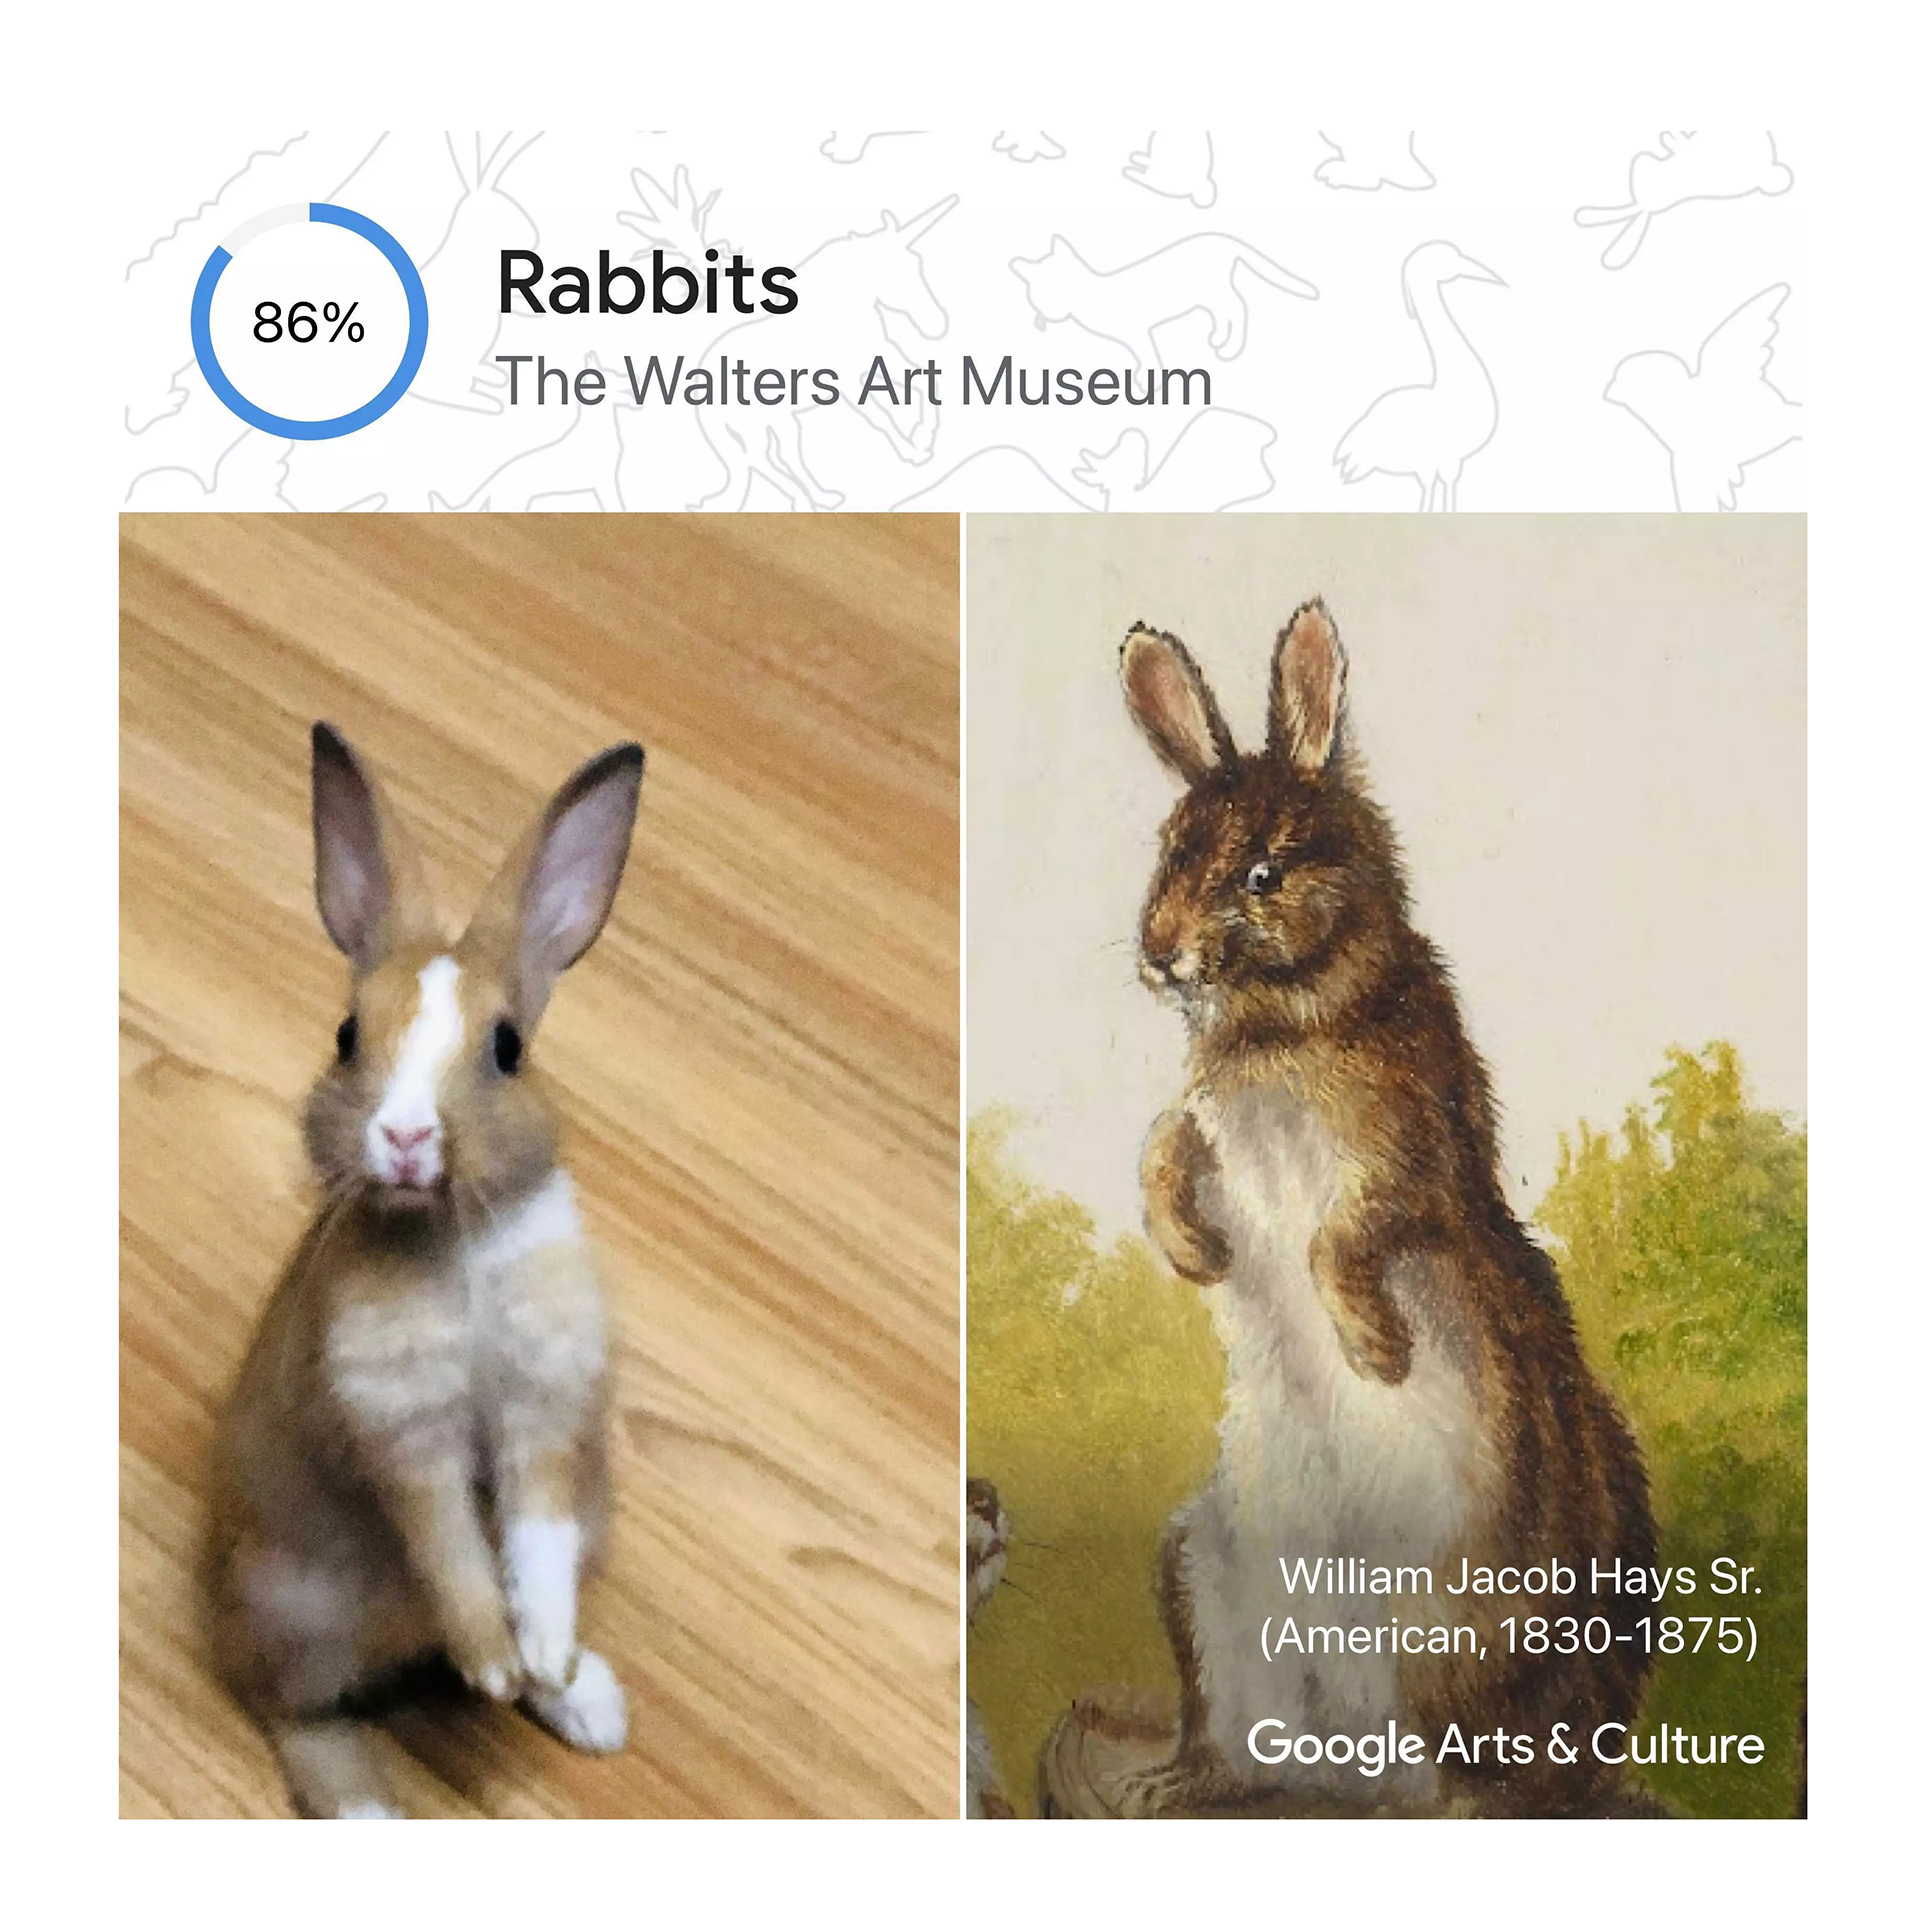 La app Pet Portraits permite conocer también la historia del animalito retratado y del artista que lo pintó